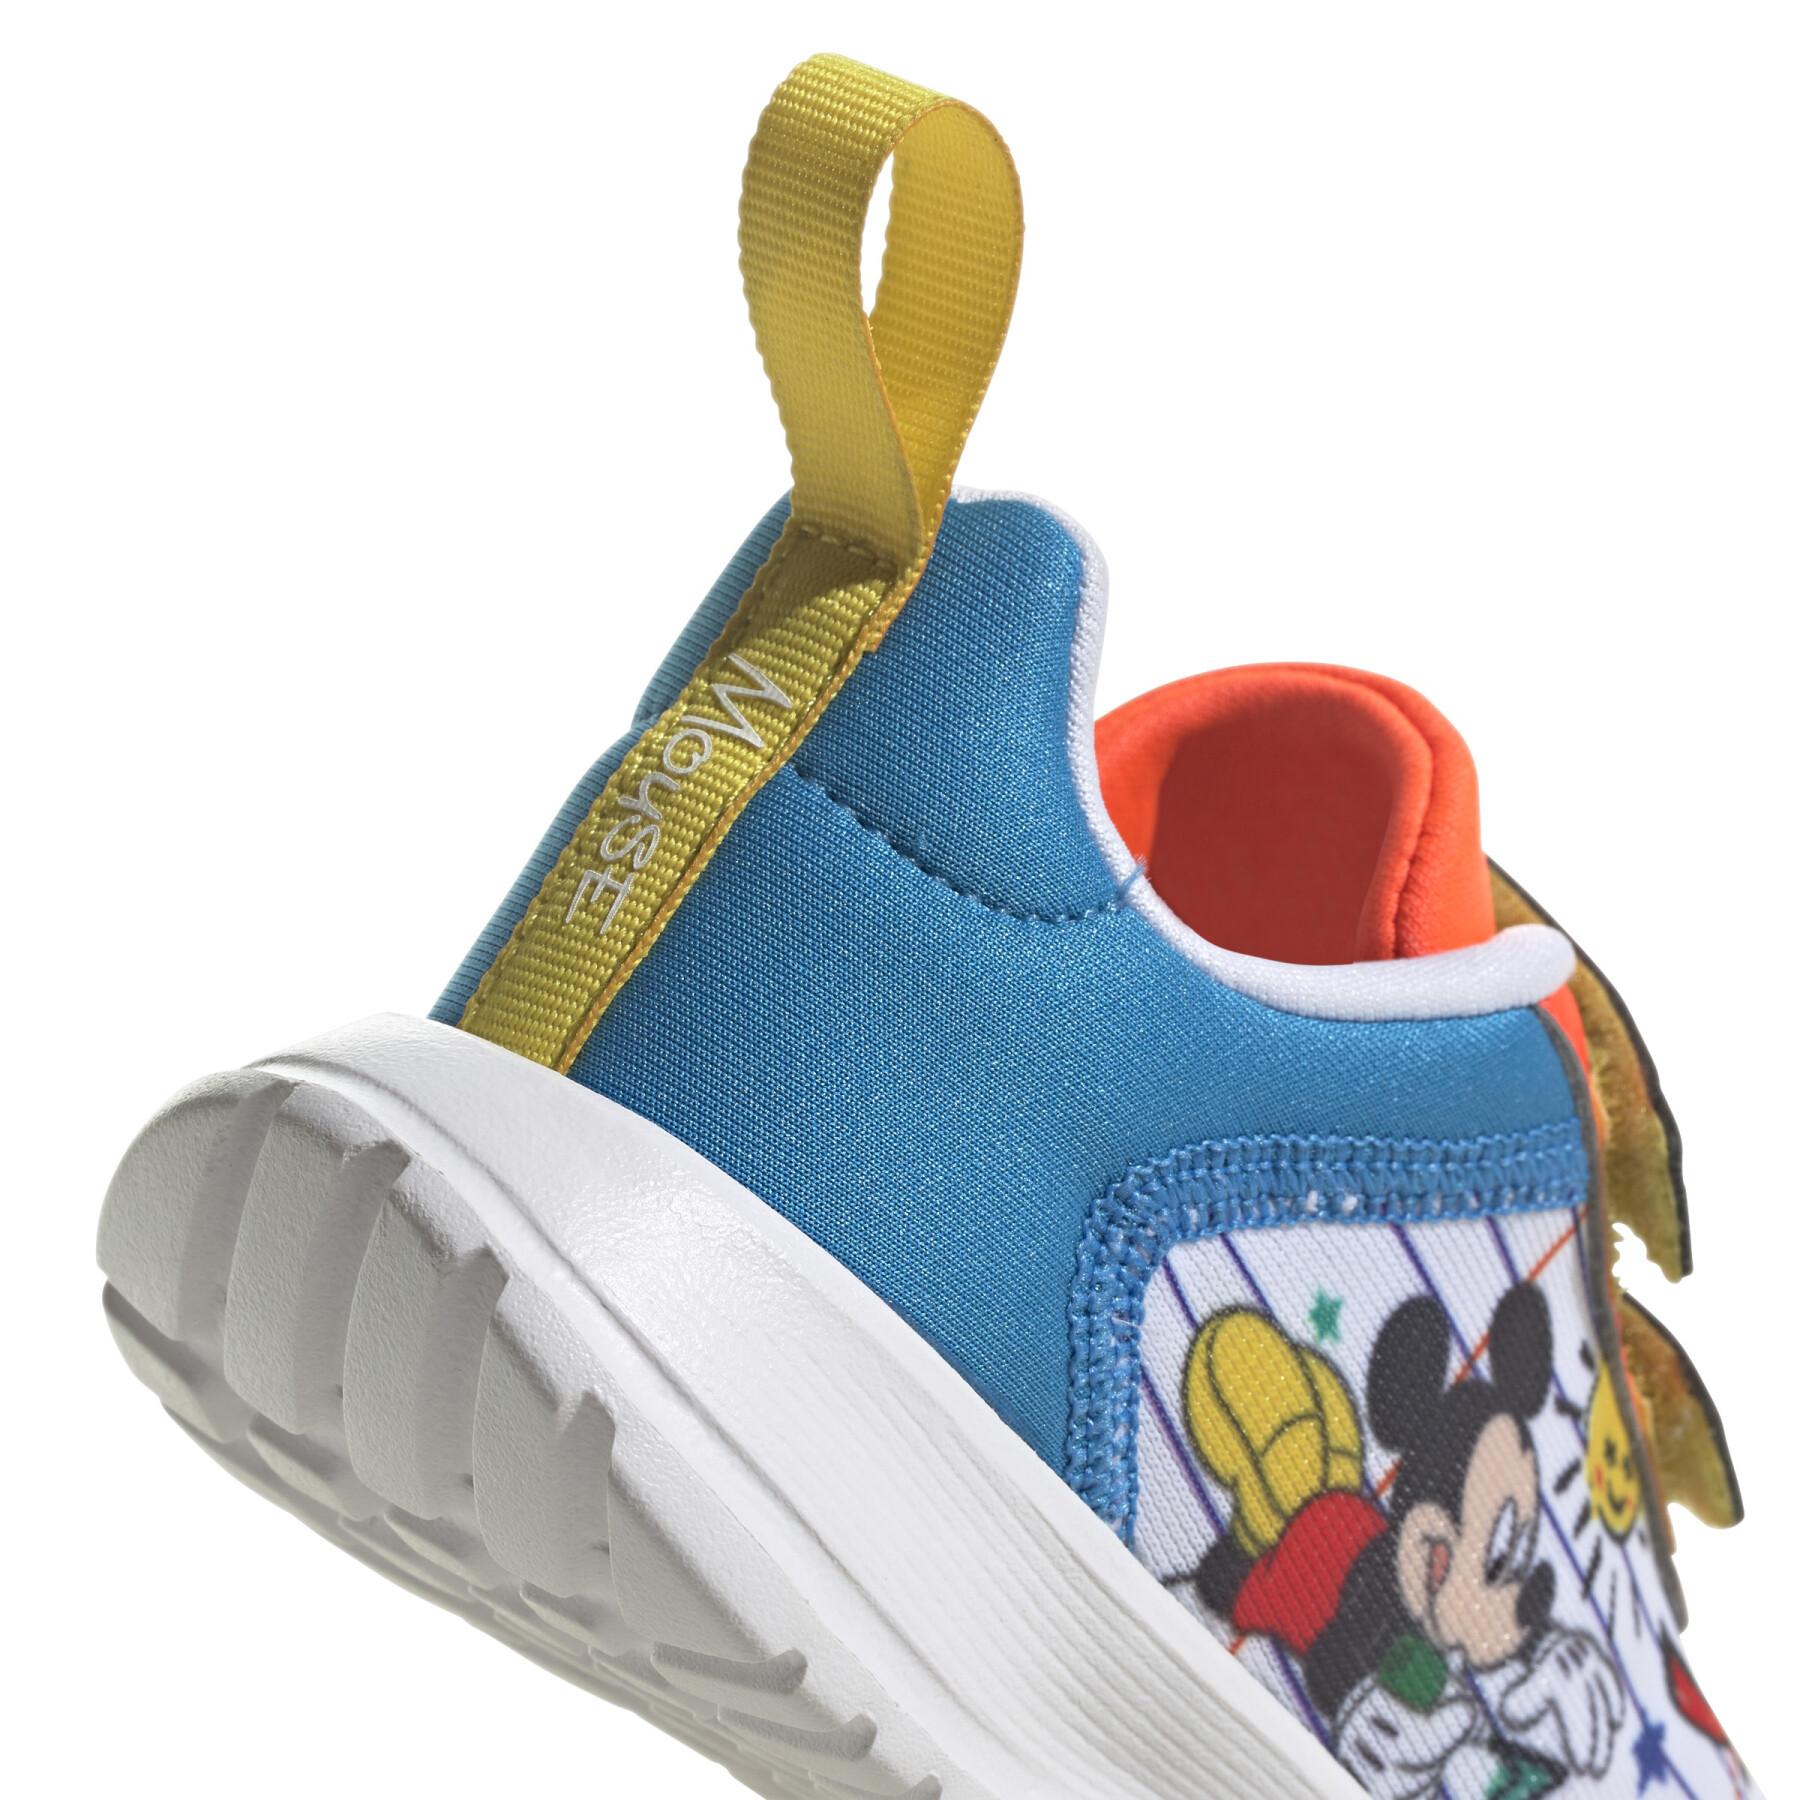 Formadores de crianças adidas x Disney Mickey and Minnie Tensaur